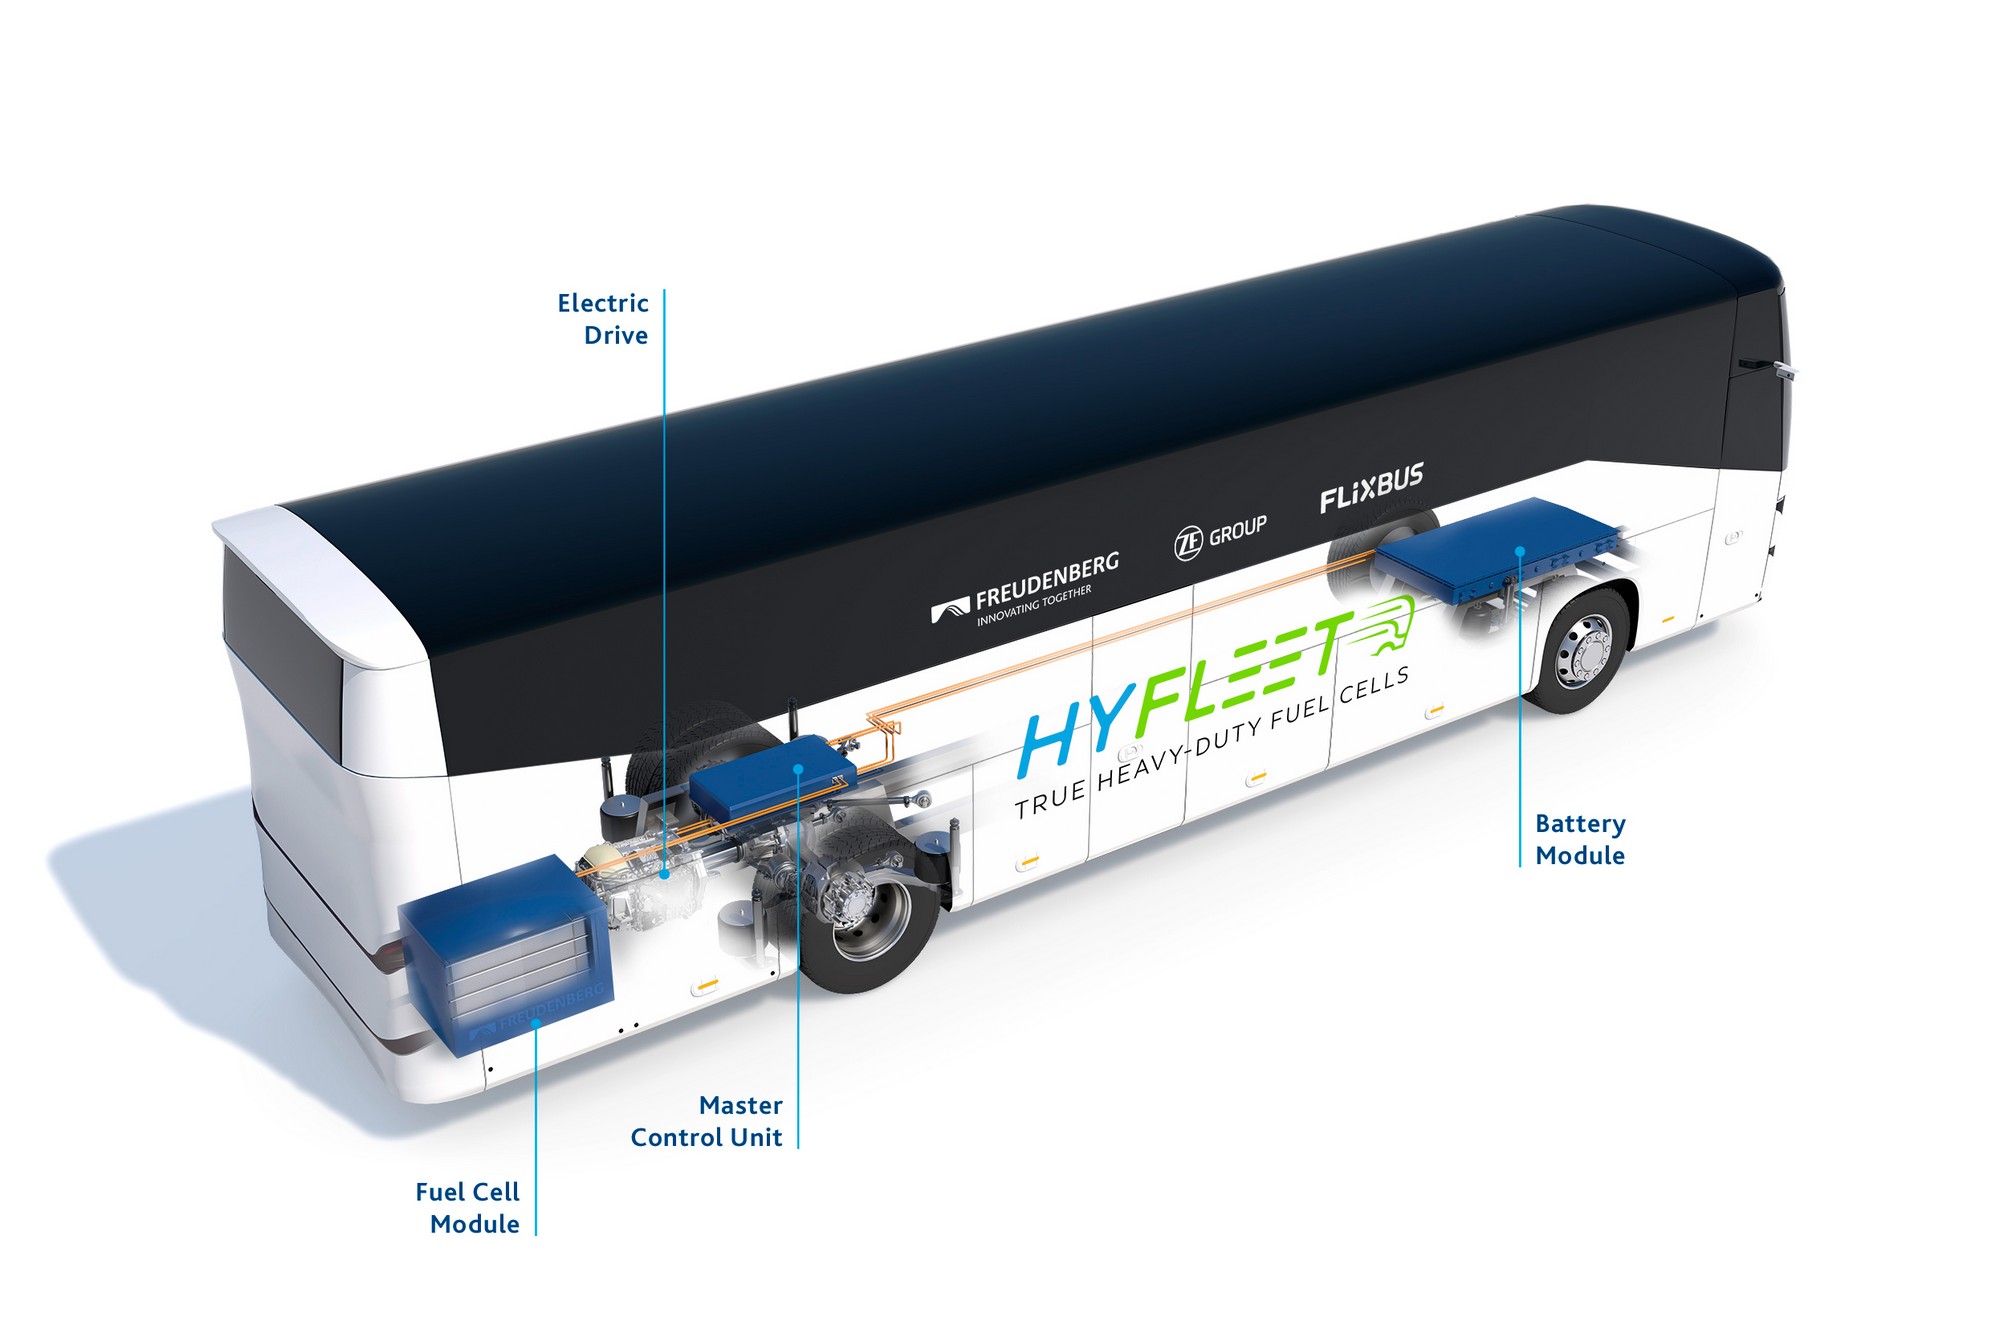 FlixMobility работает над созданием "дальнобойного" водородного автобуса HyFleet, который выйдет на европейские маршруты до 2024 года